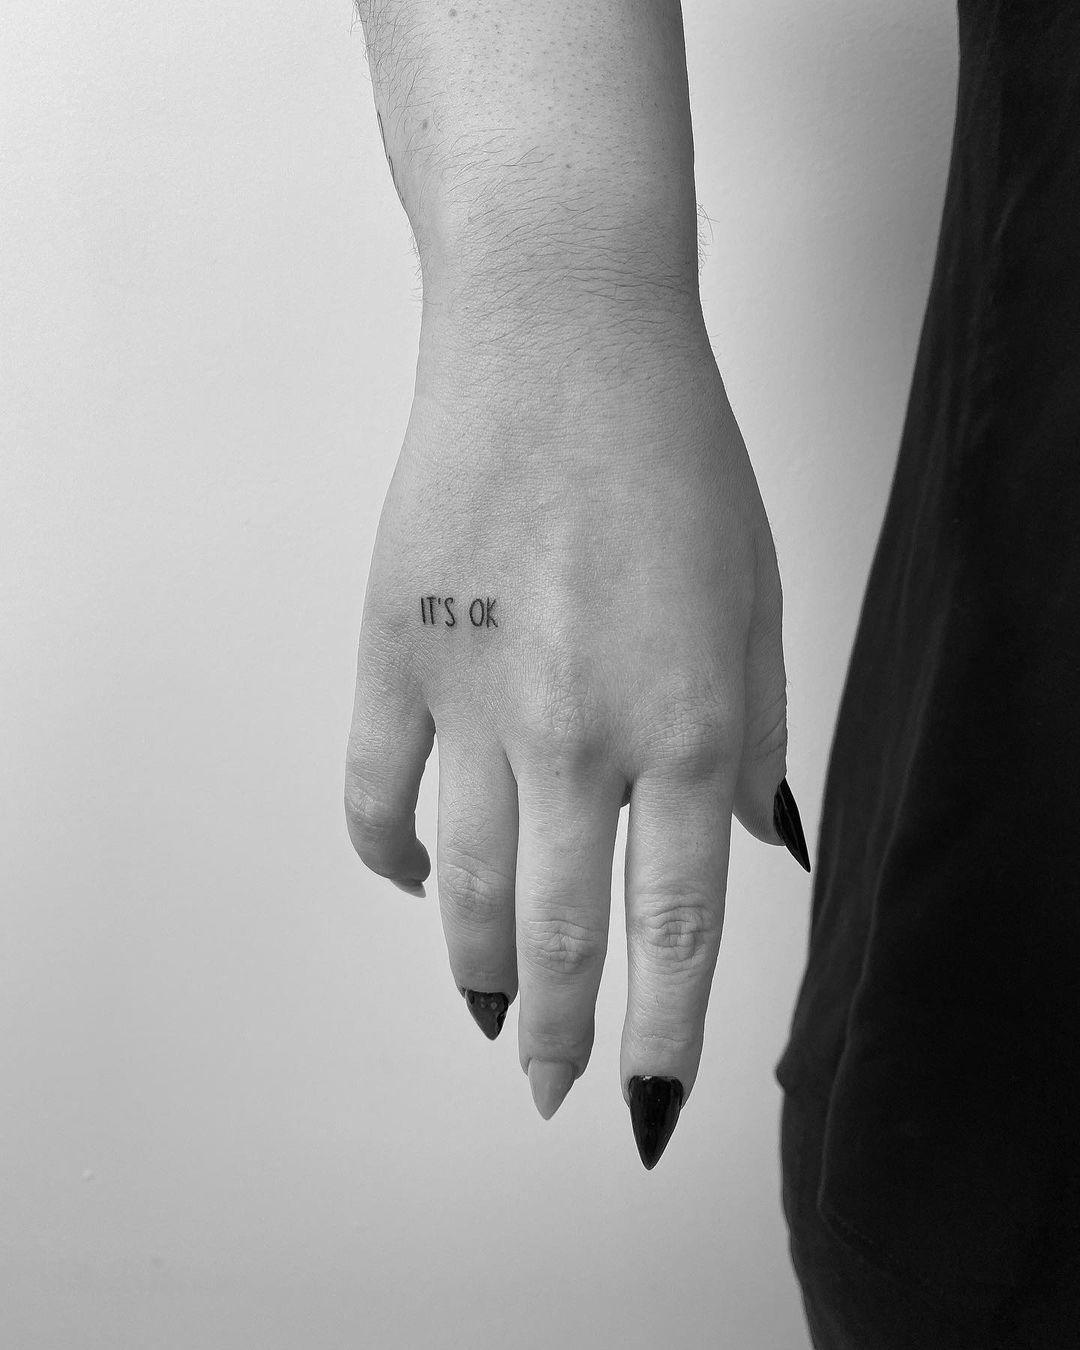 ‘It’s ok’ tatuado sobre la mano